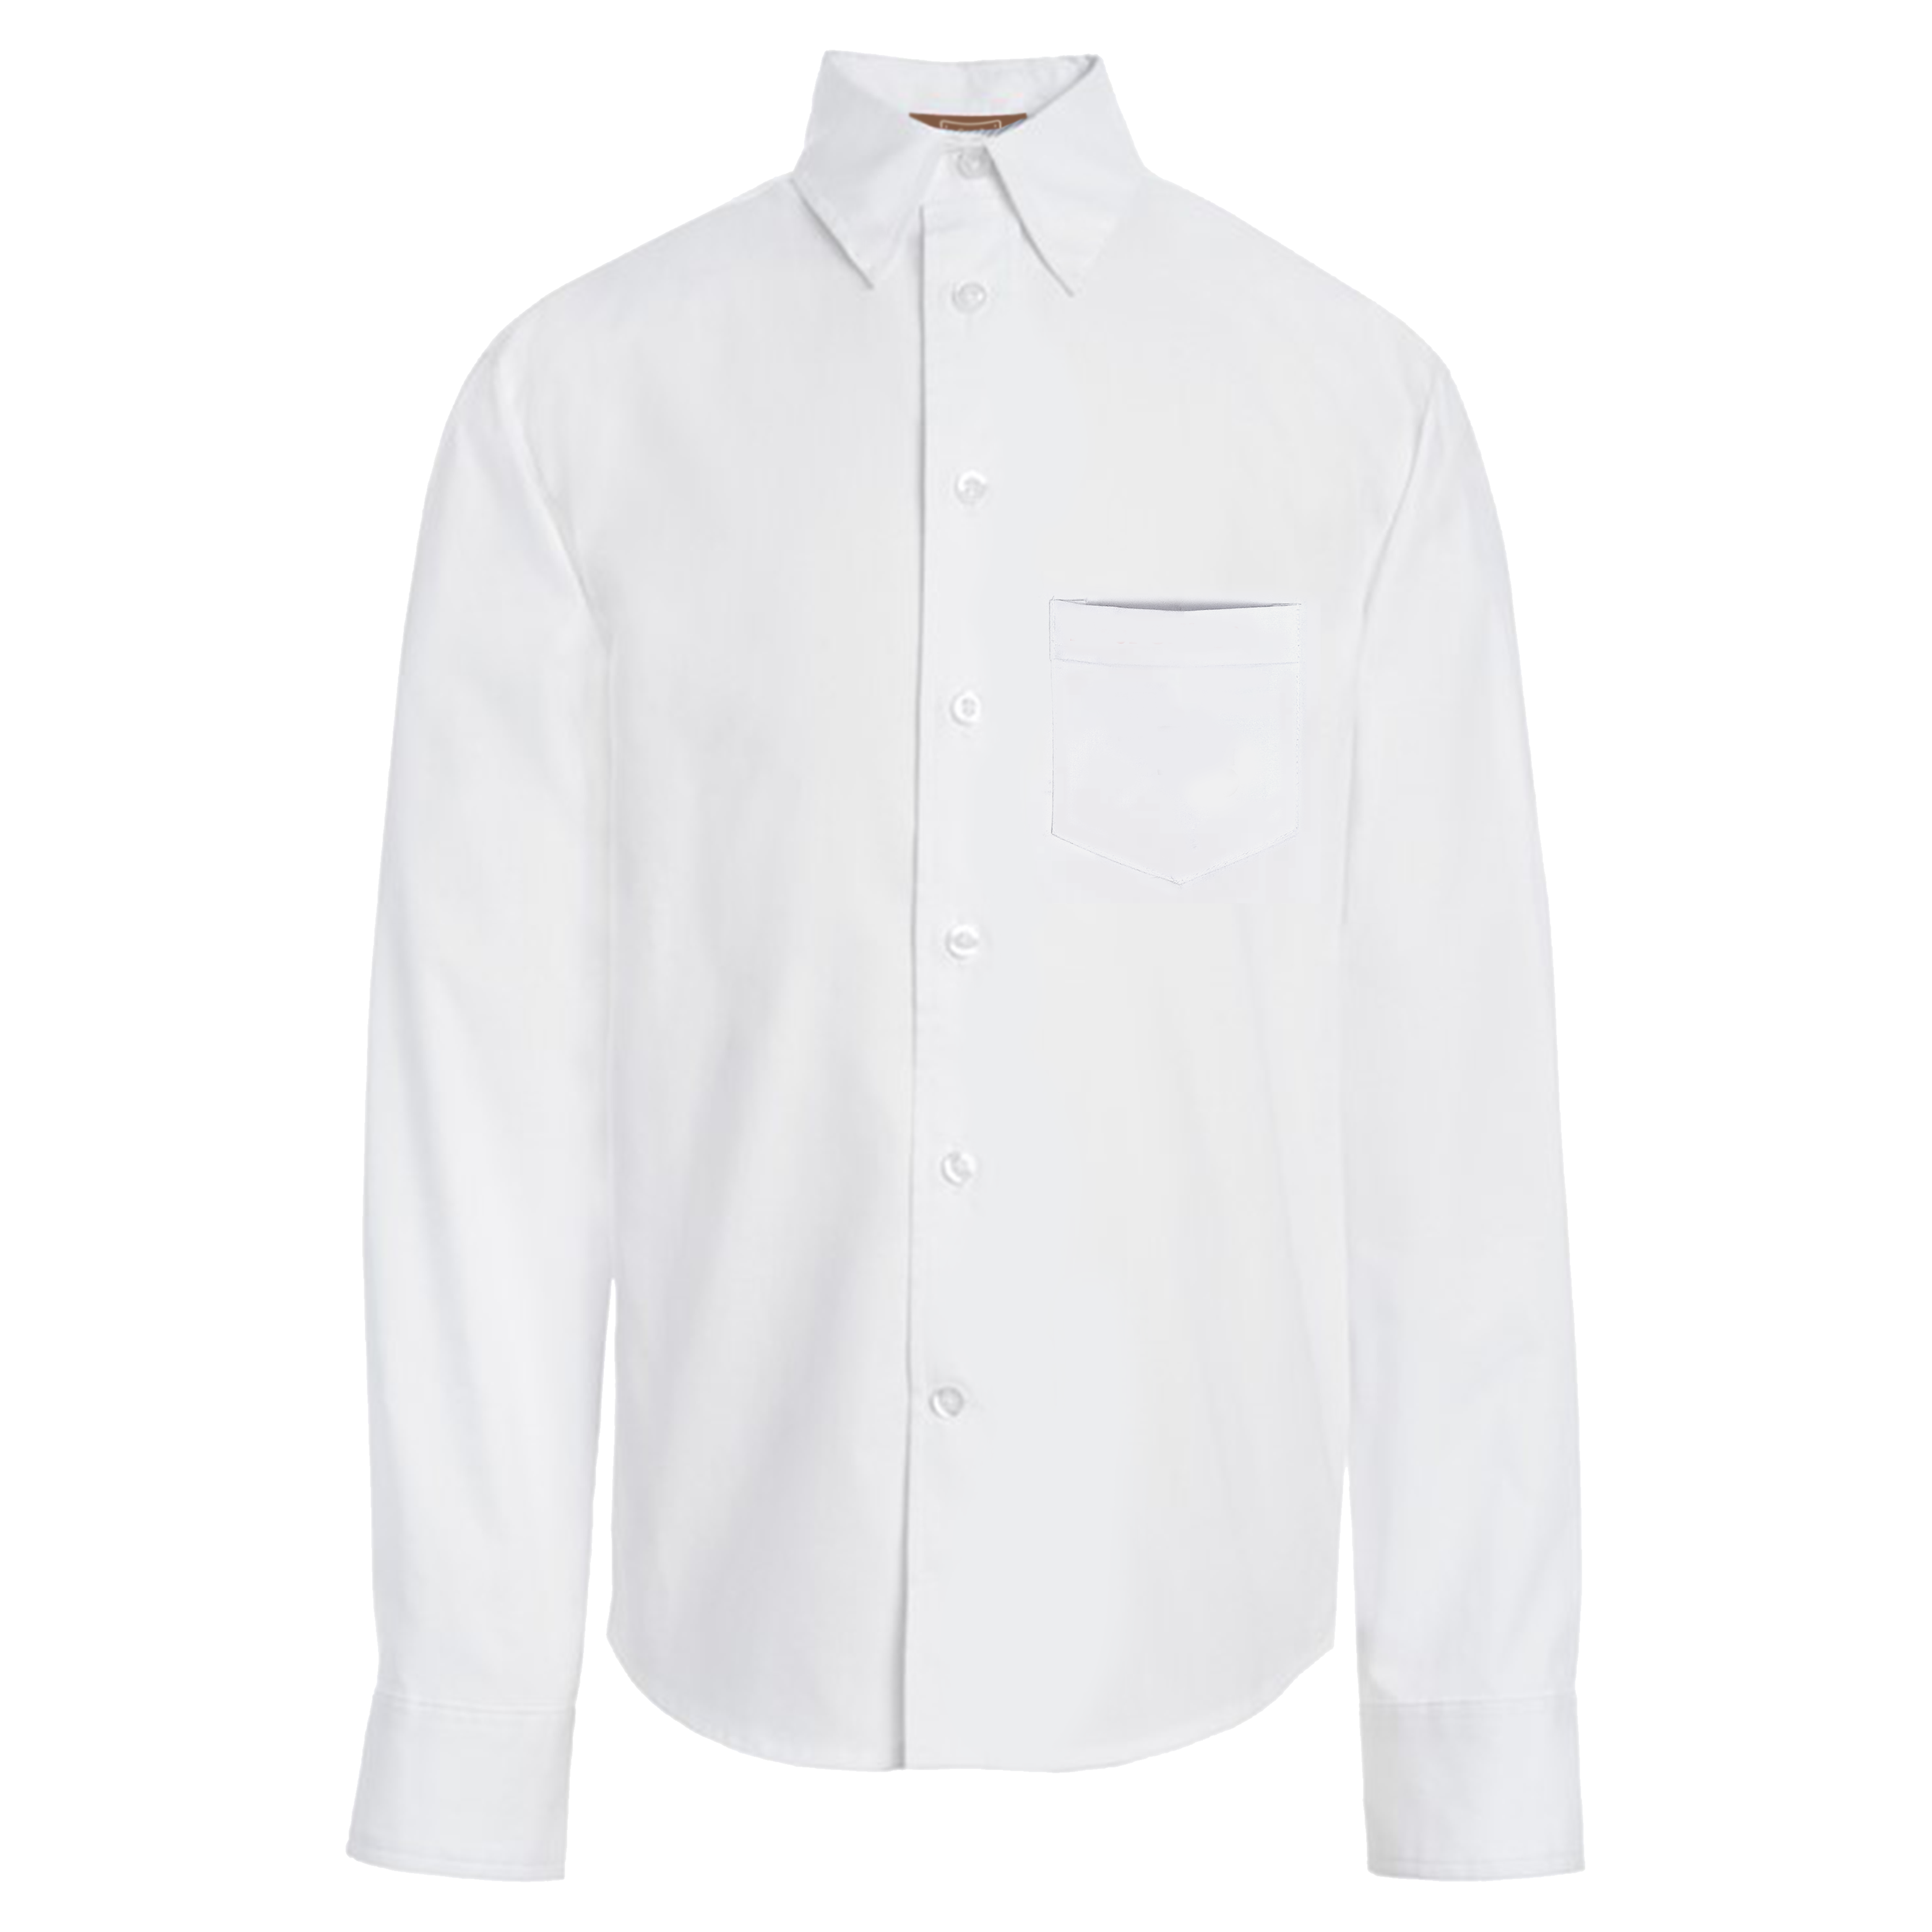 Plain White F/S Shirt